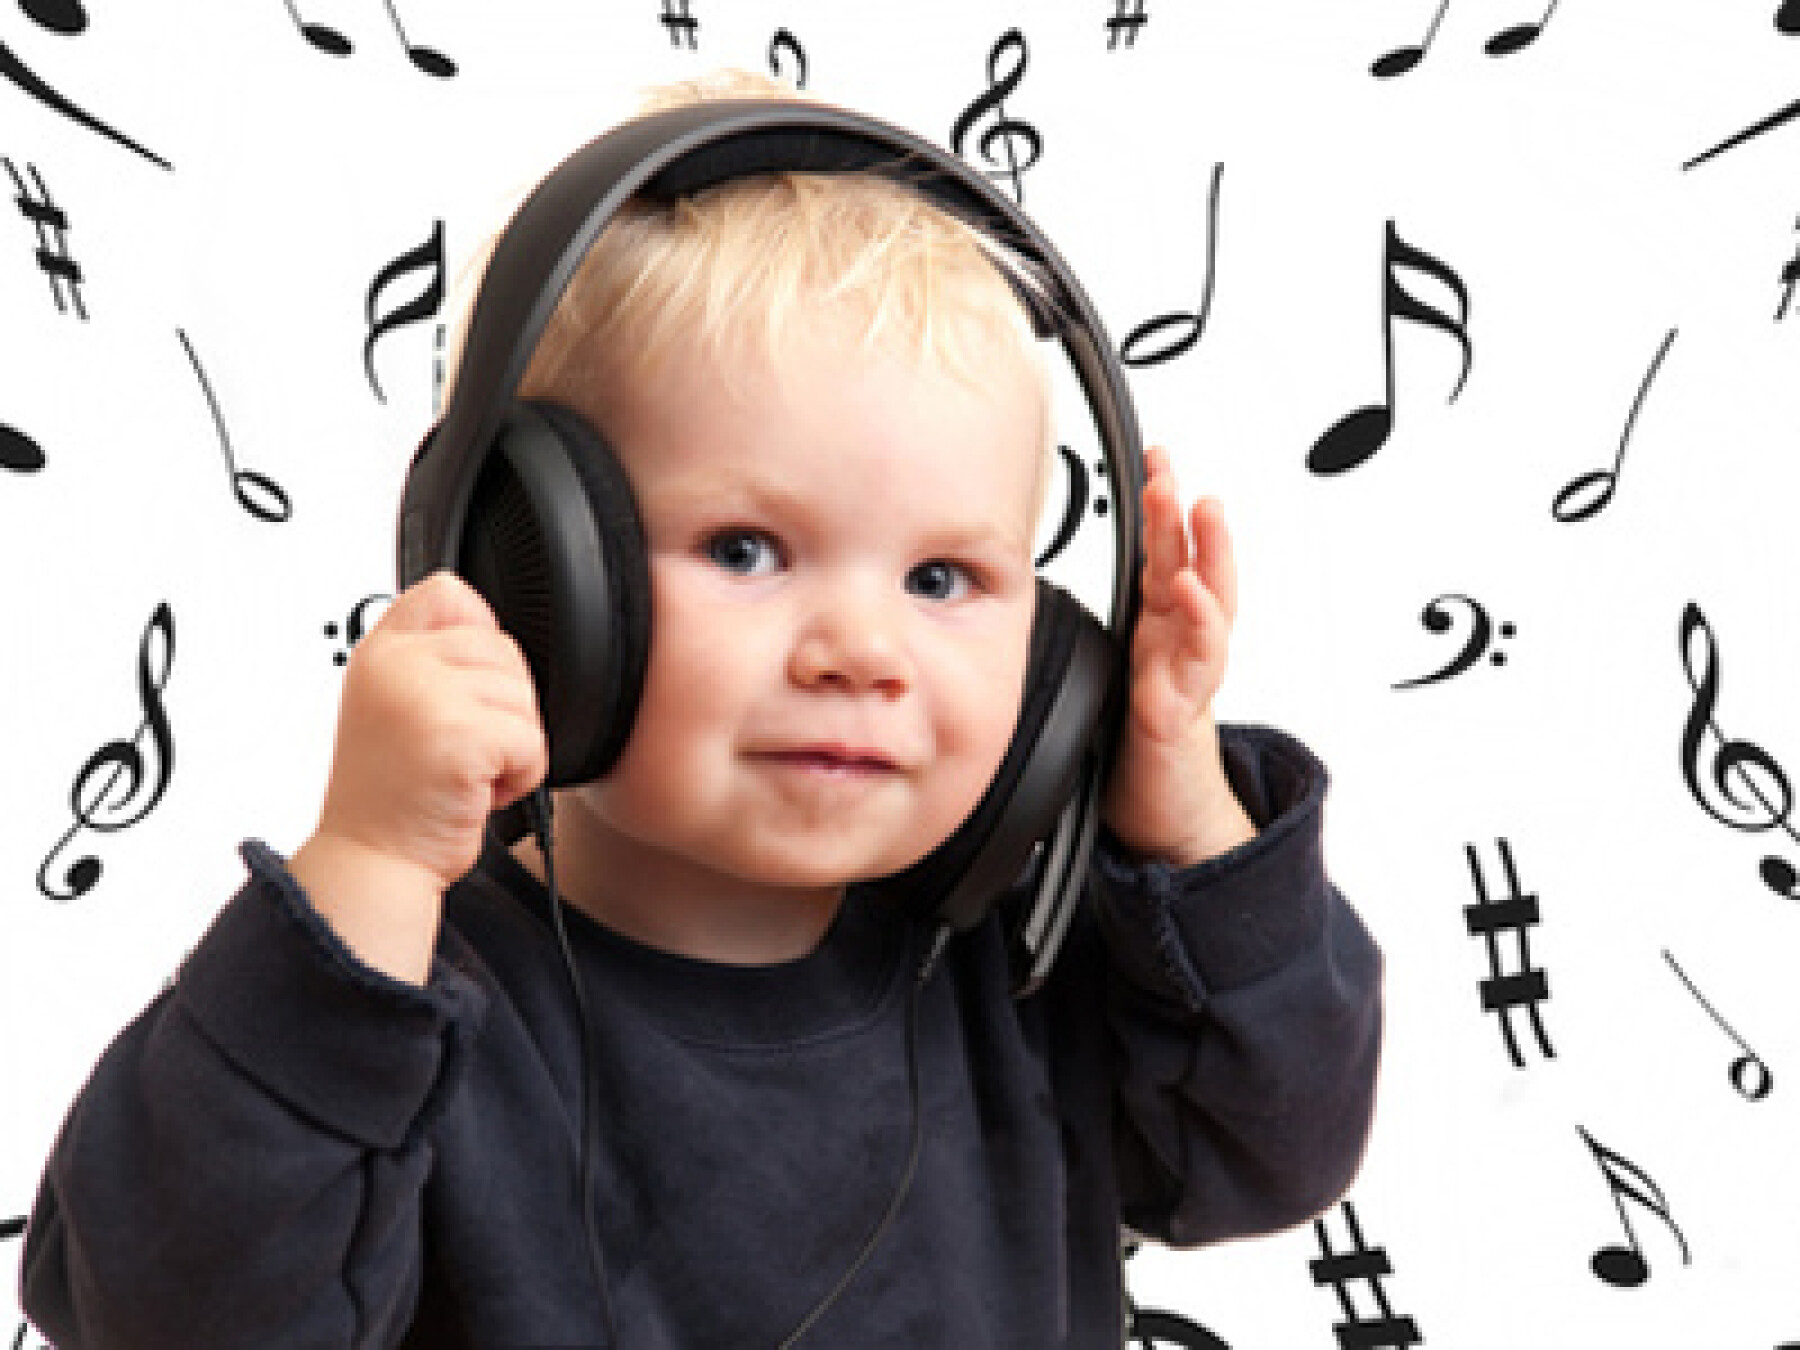 La musique, c’est bon pour les enfants !